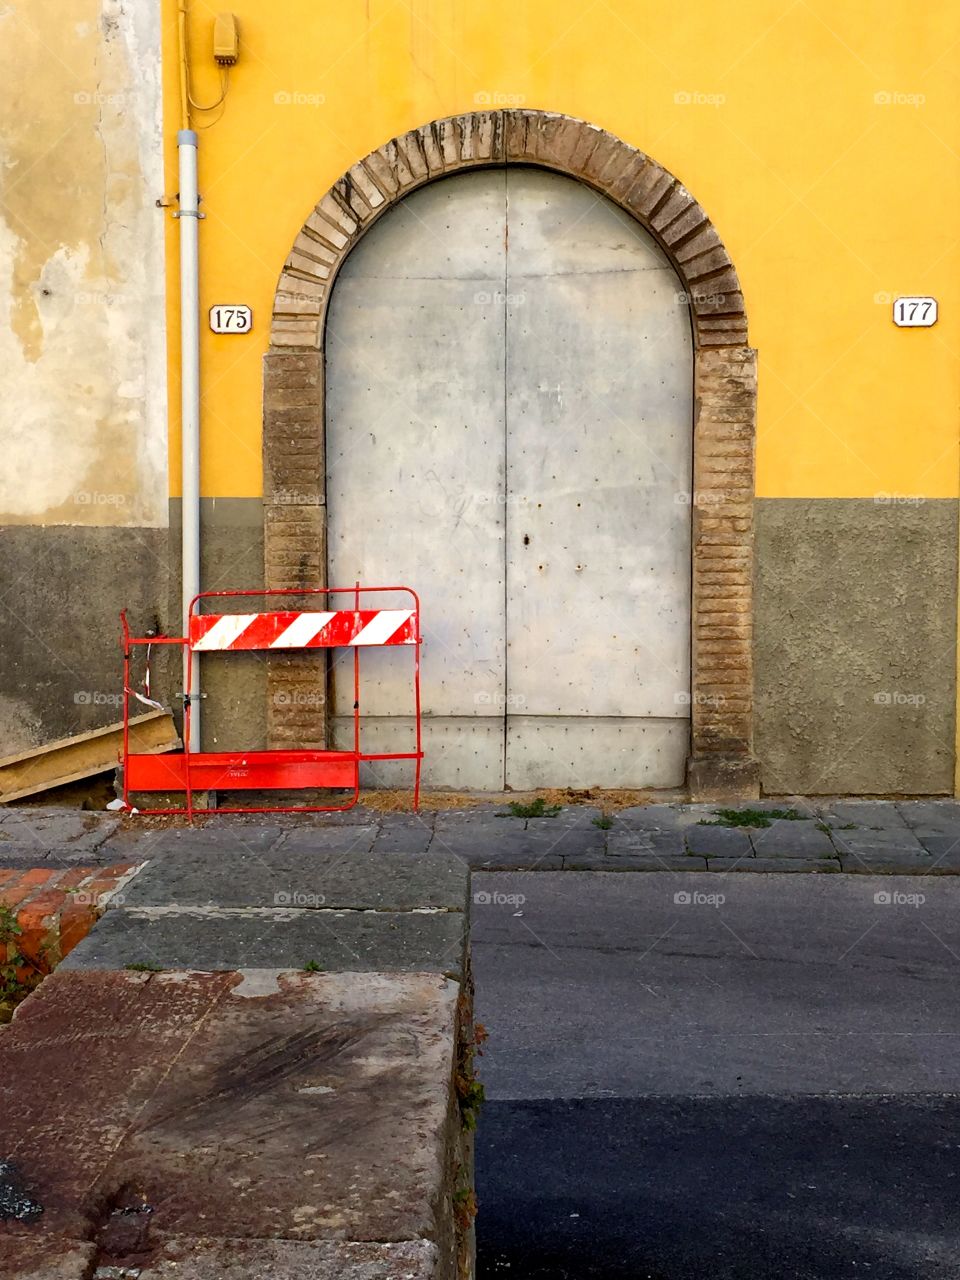 Door found in Lucca, Italy 